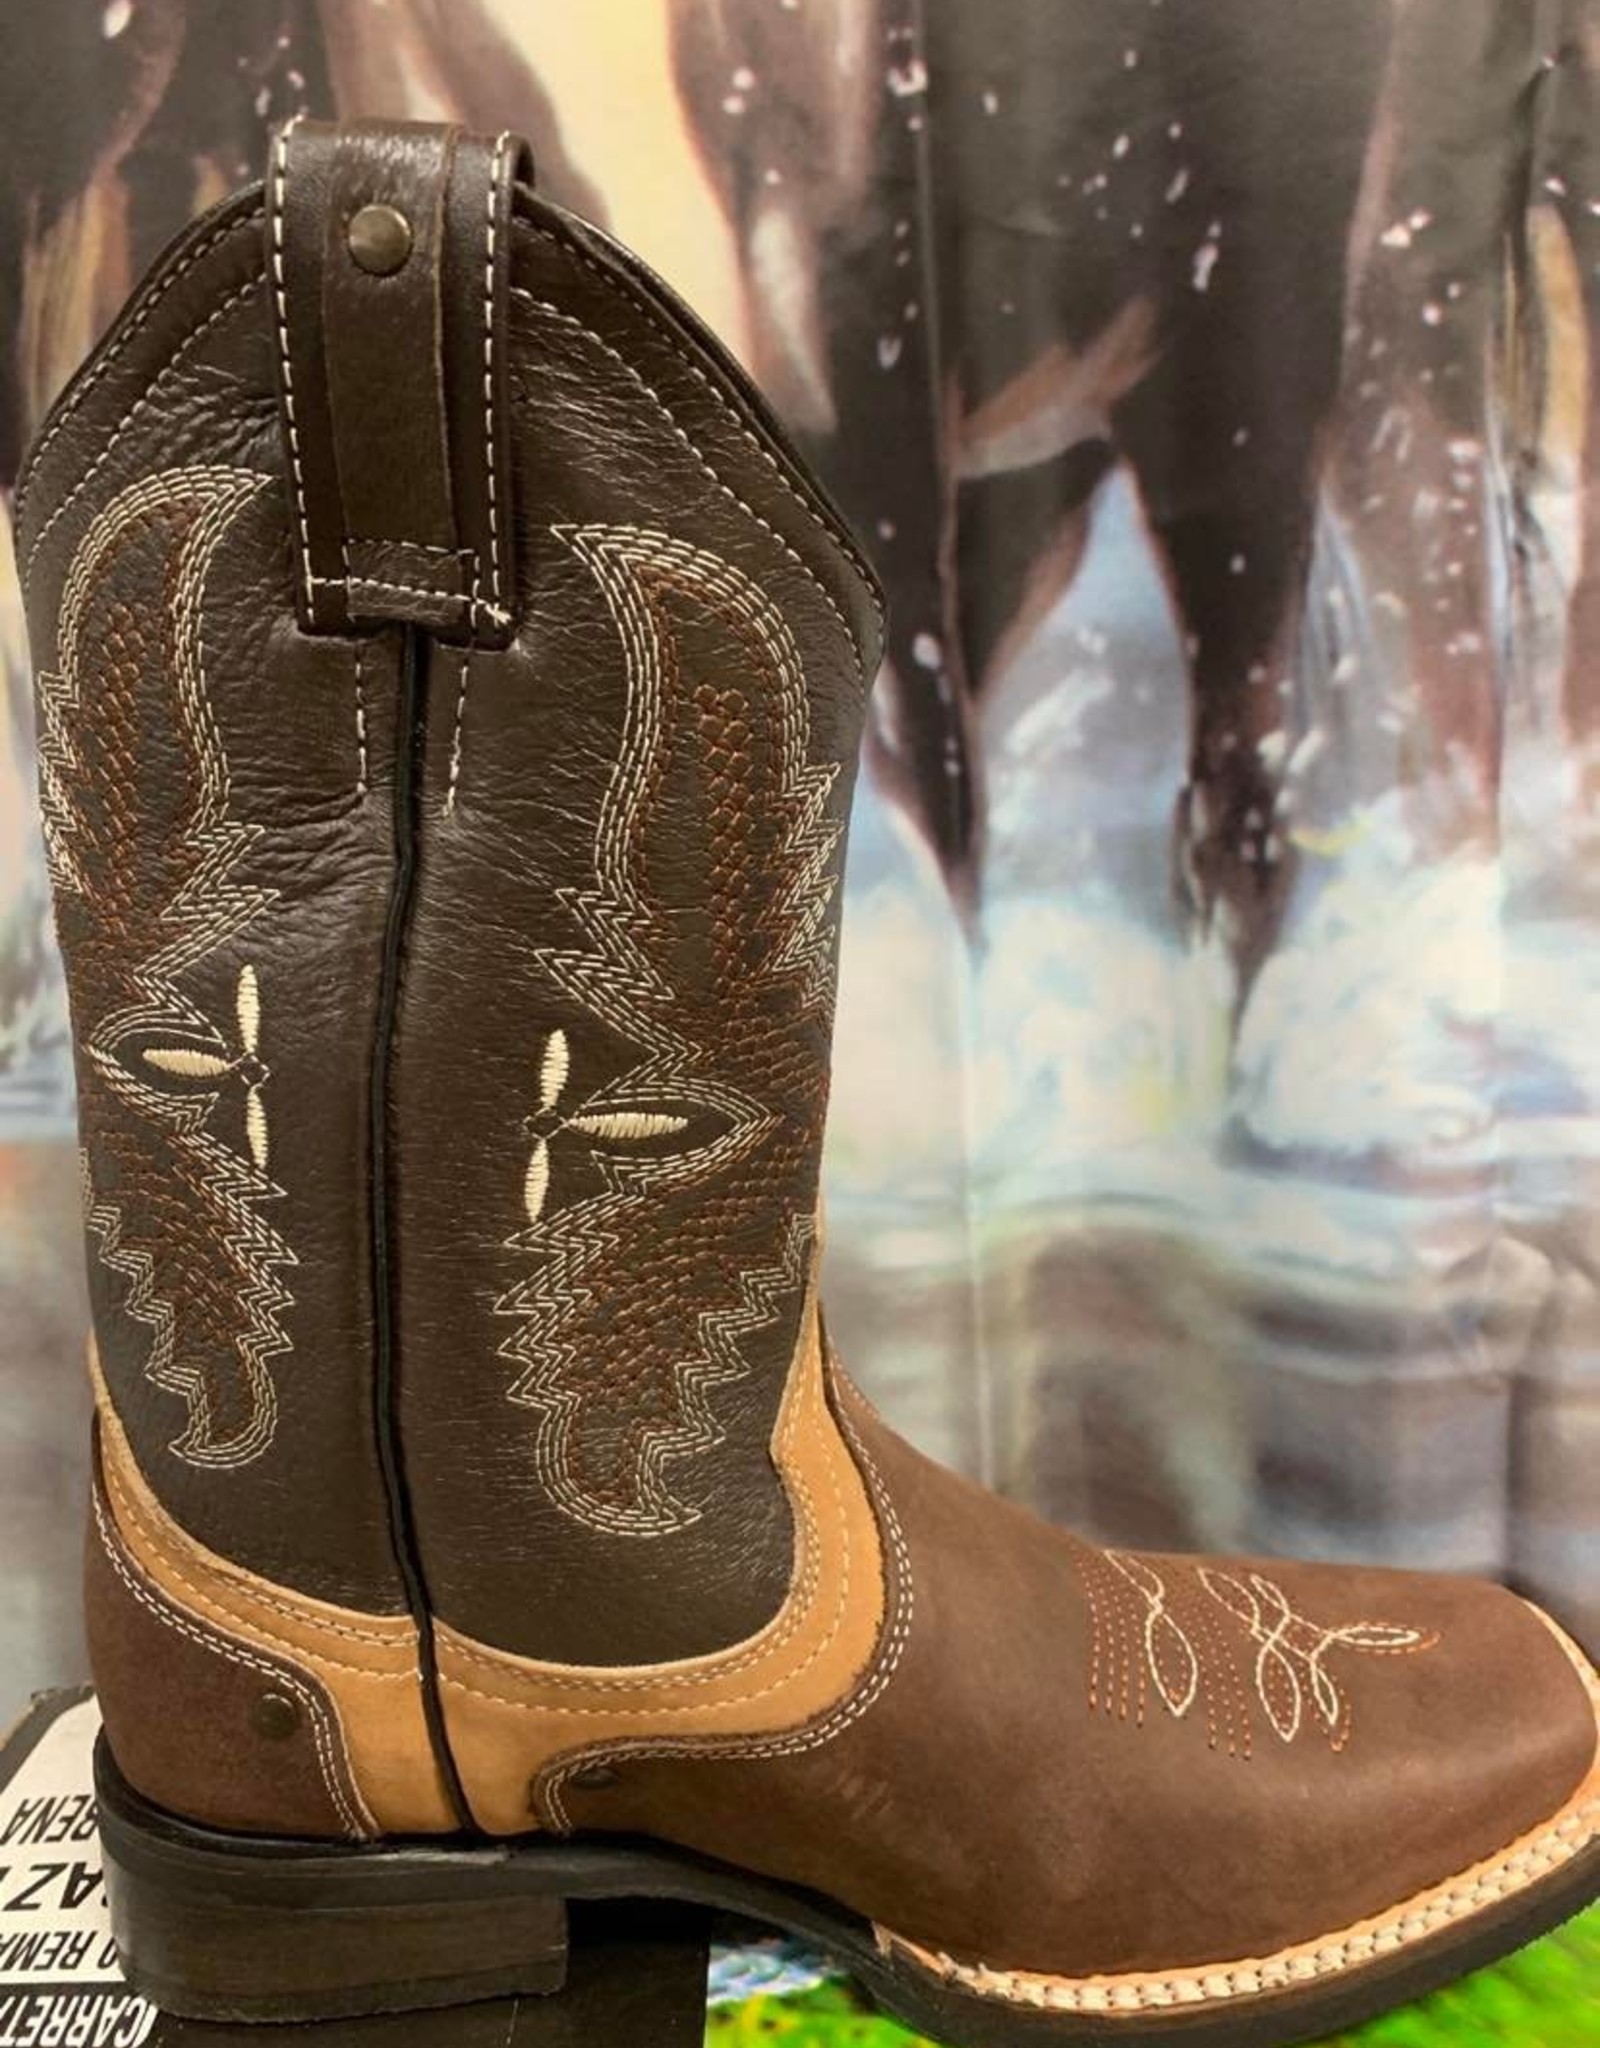 AJ Western Wear Ladies Western Boot Brown sq toe